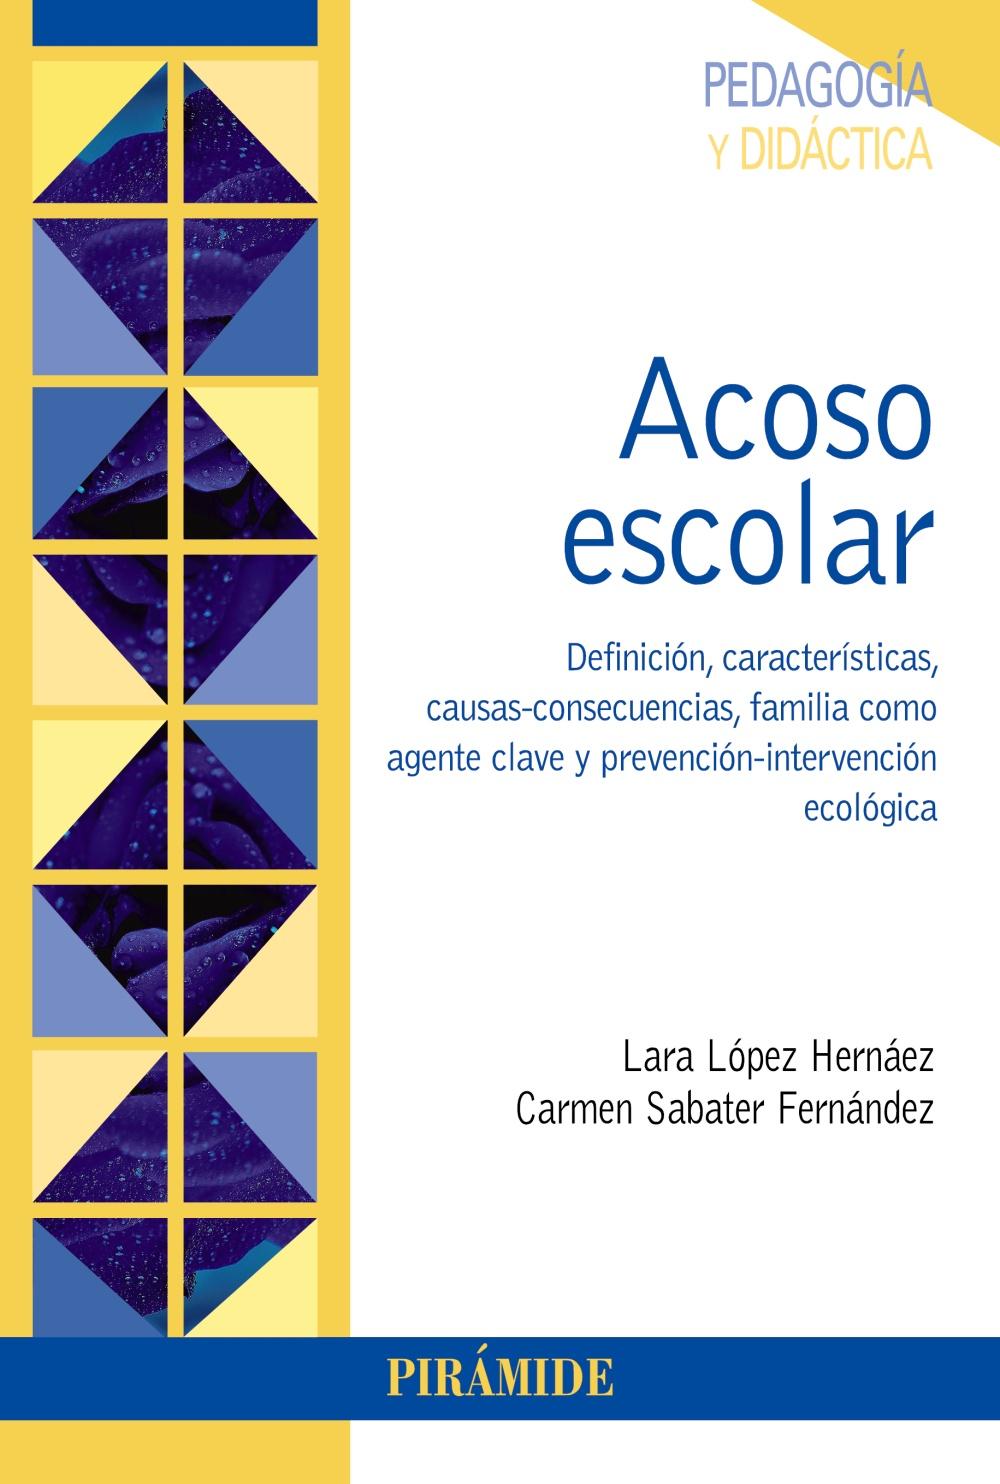 Acoso escolar | Katakrak Liburuak - Librería, Cafetería, Editorial, Centro  de estudios críticos, cooperativa, economía social